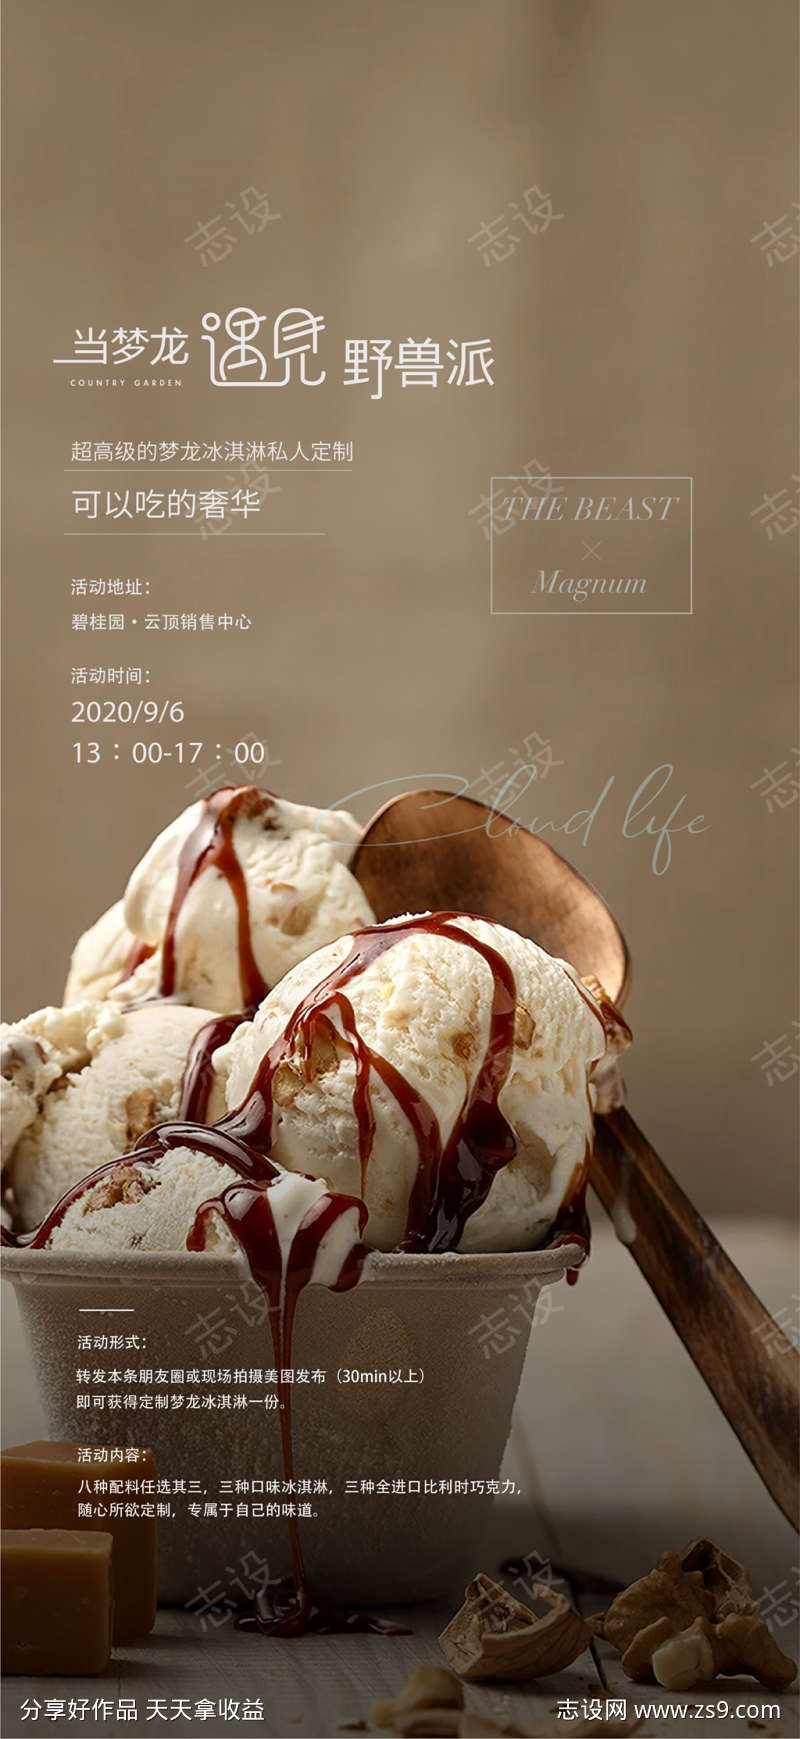 地产冰淇淋活动系列海报